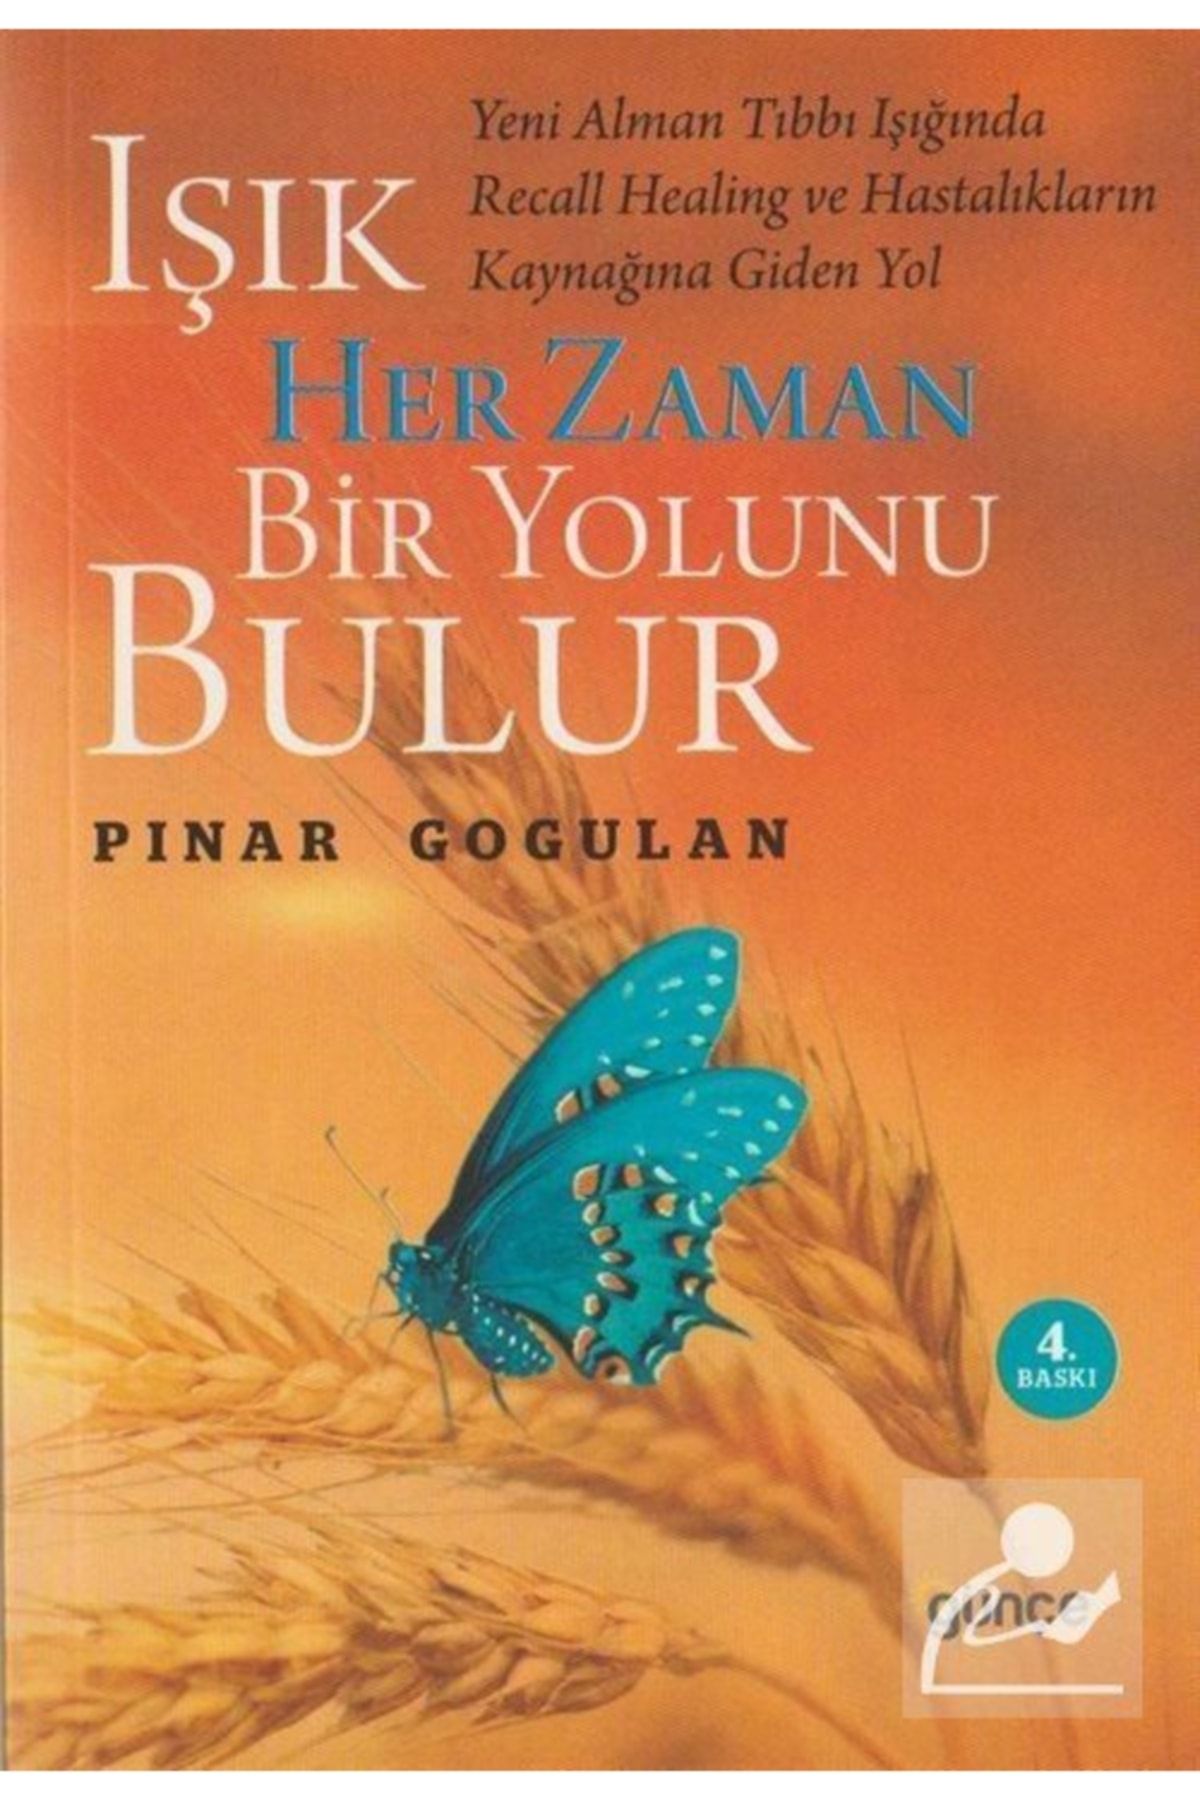 Günçe Yayınları Işık Her Zaman Bir Yolunu Bulur - - Pınar Gogulan Kitabı